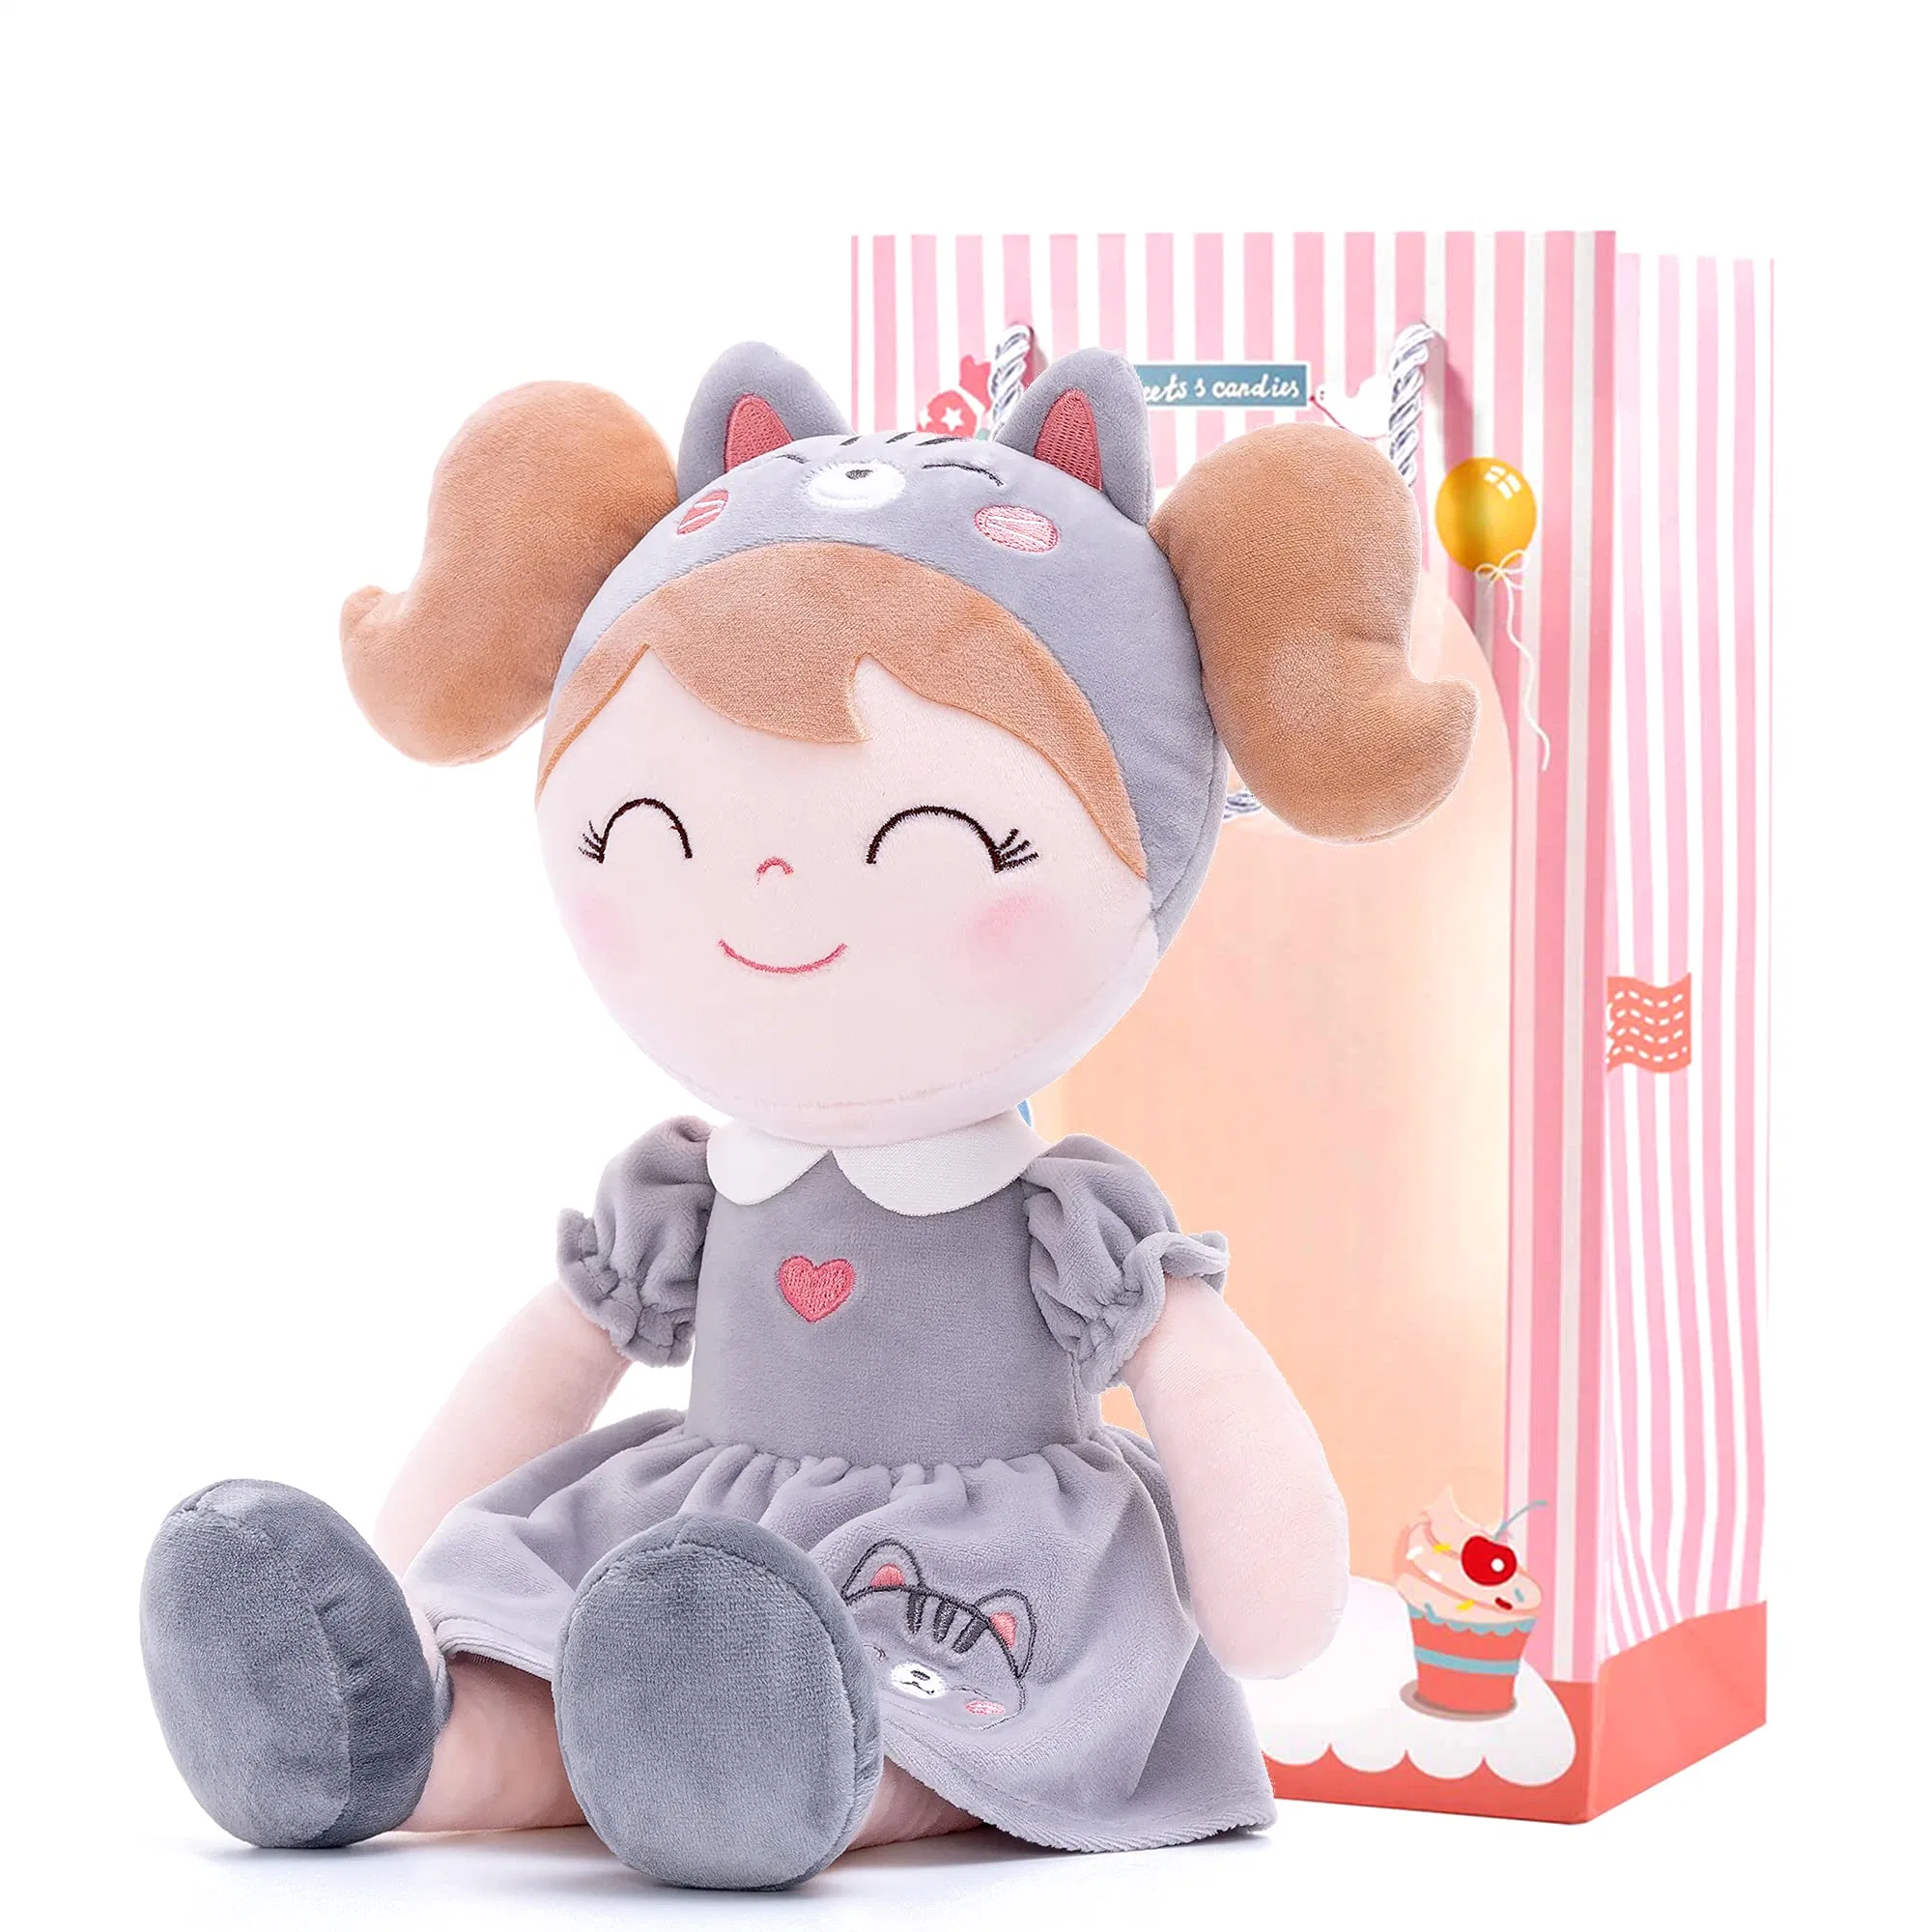 OEM ODM Soft Baby Dolls Stuffed Plush Toy Rag Girl Doll Mu100349 with CE En71 Gcc